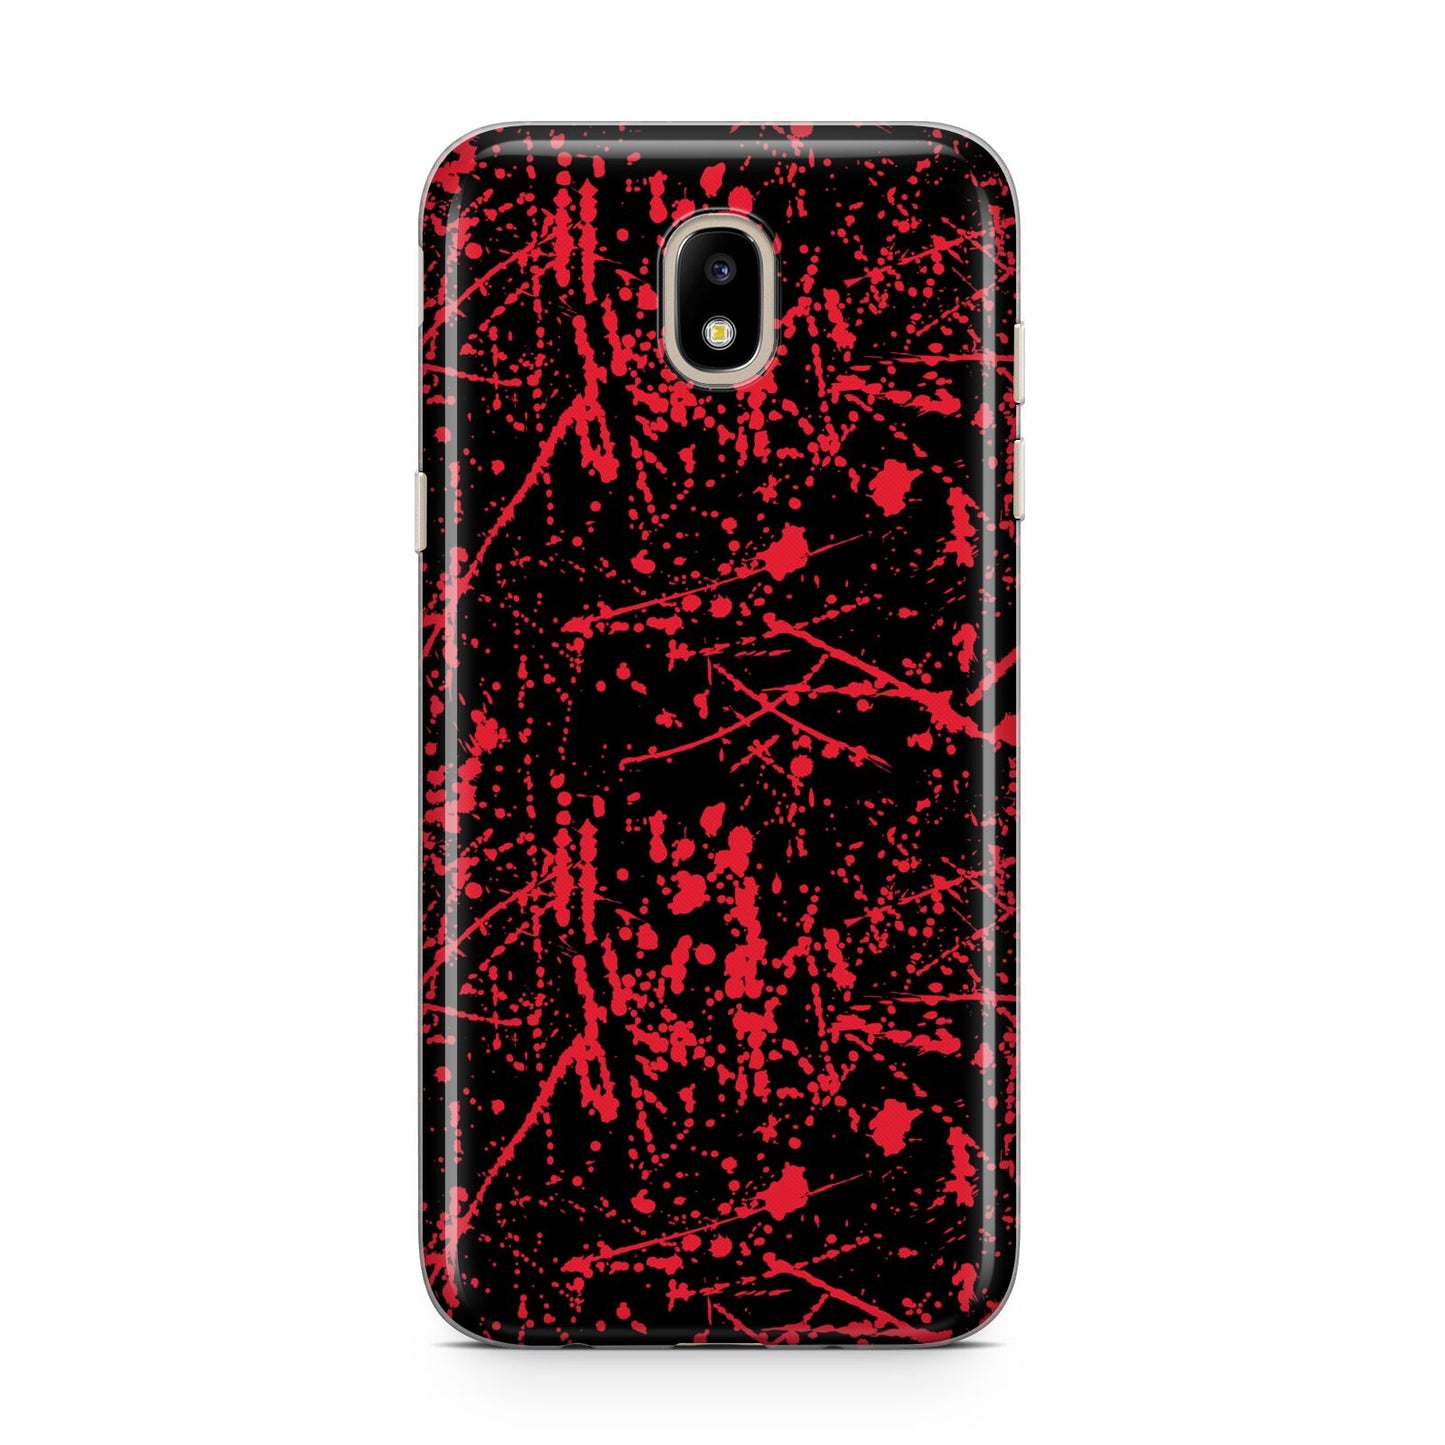 Blood Splatters Samsung J5 2017 Case